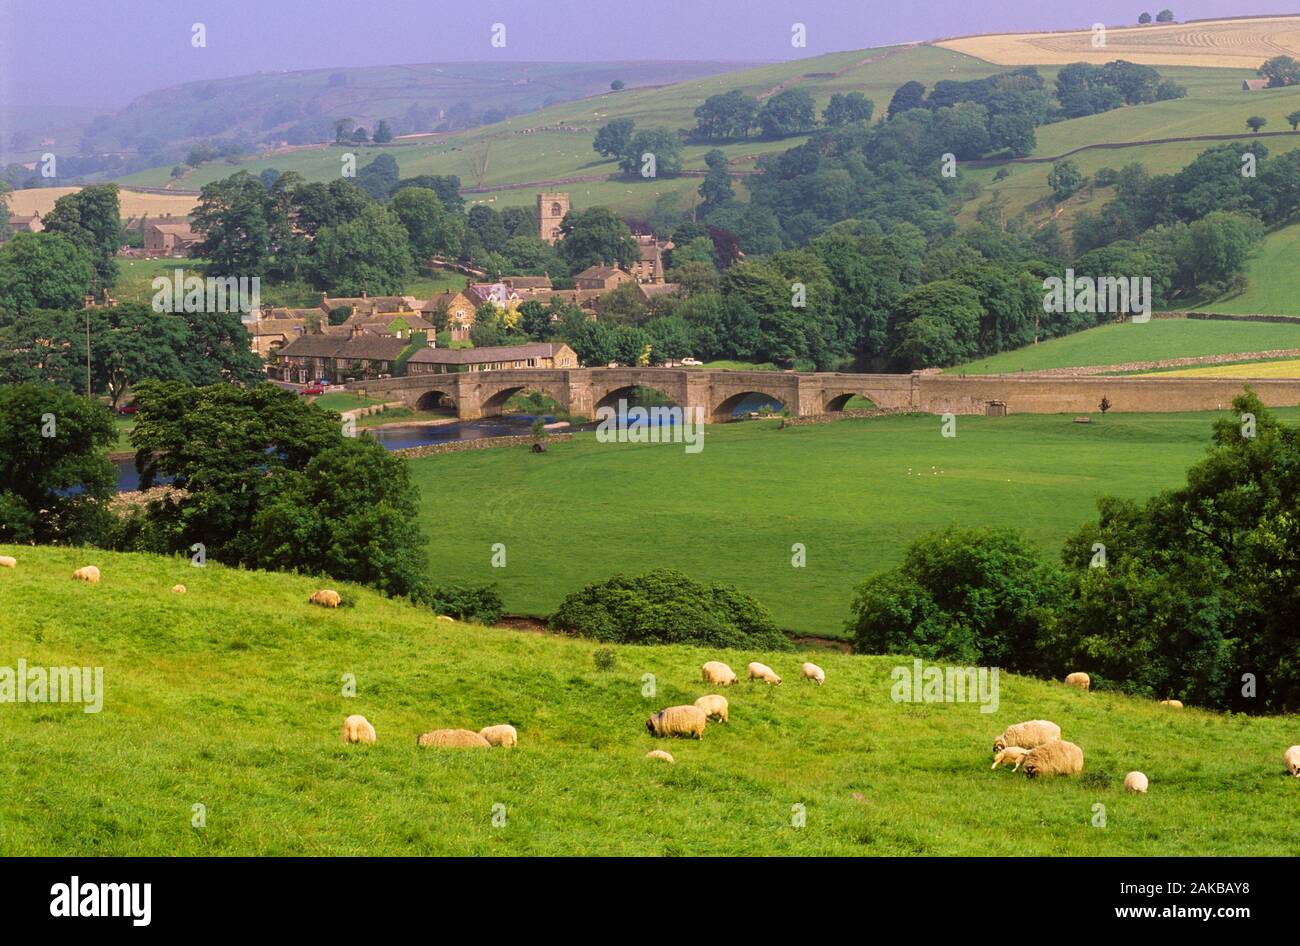 Ländliche Landschaft mit grasenden Schafen, das Dorf und die Brücke, Burnsall, Yorkshire Dales National Park, England, Großbritannien Stockfoto